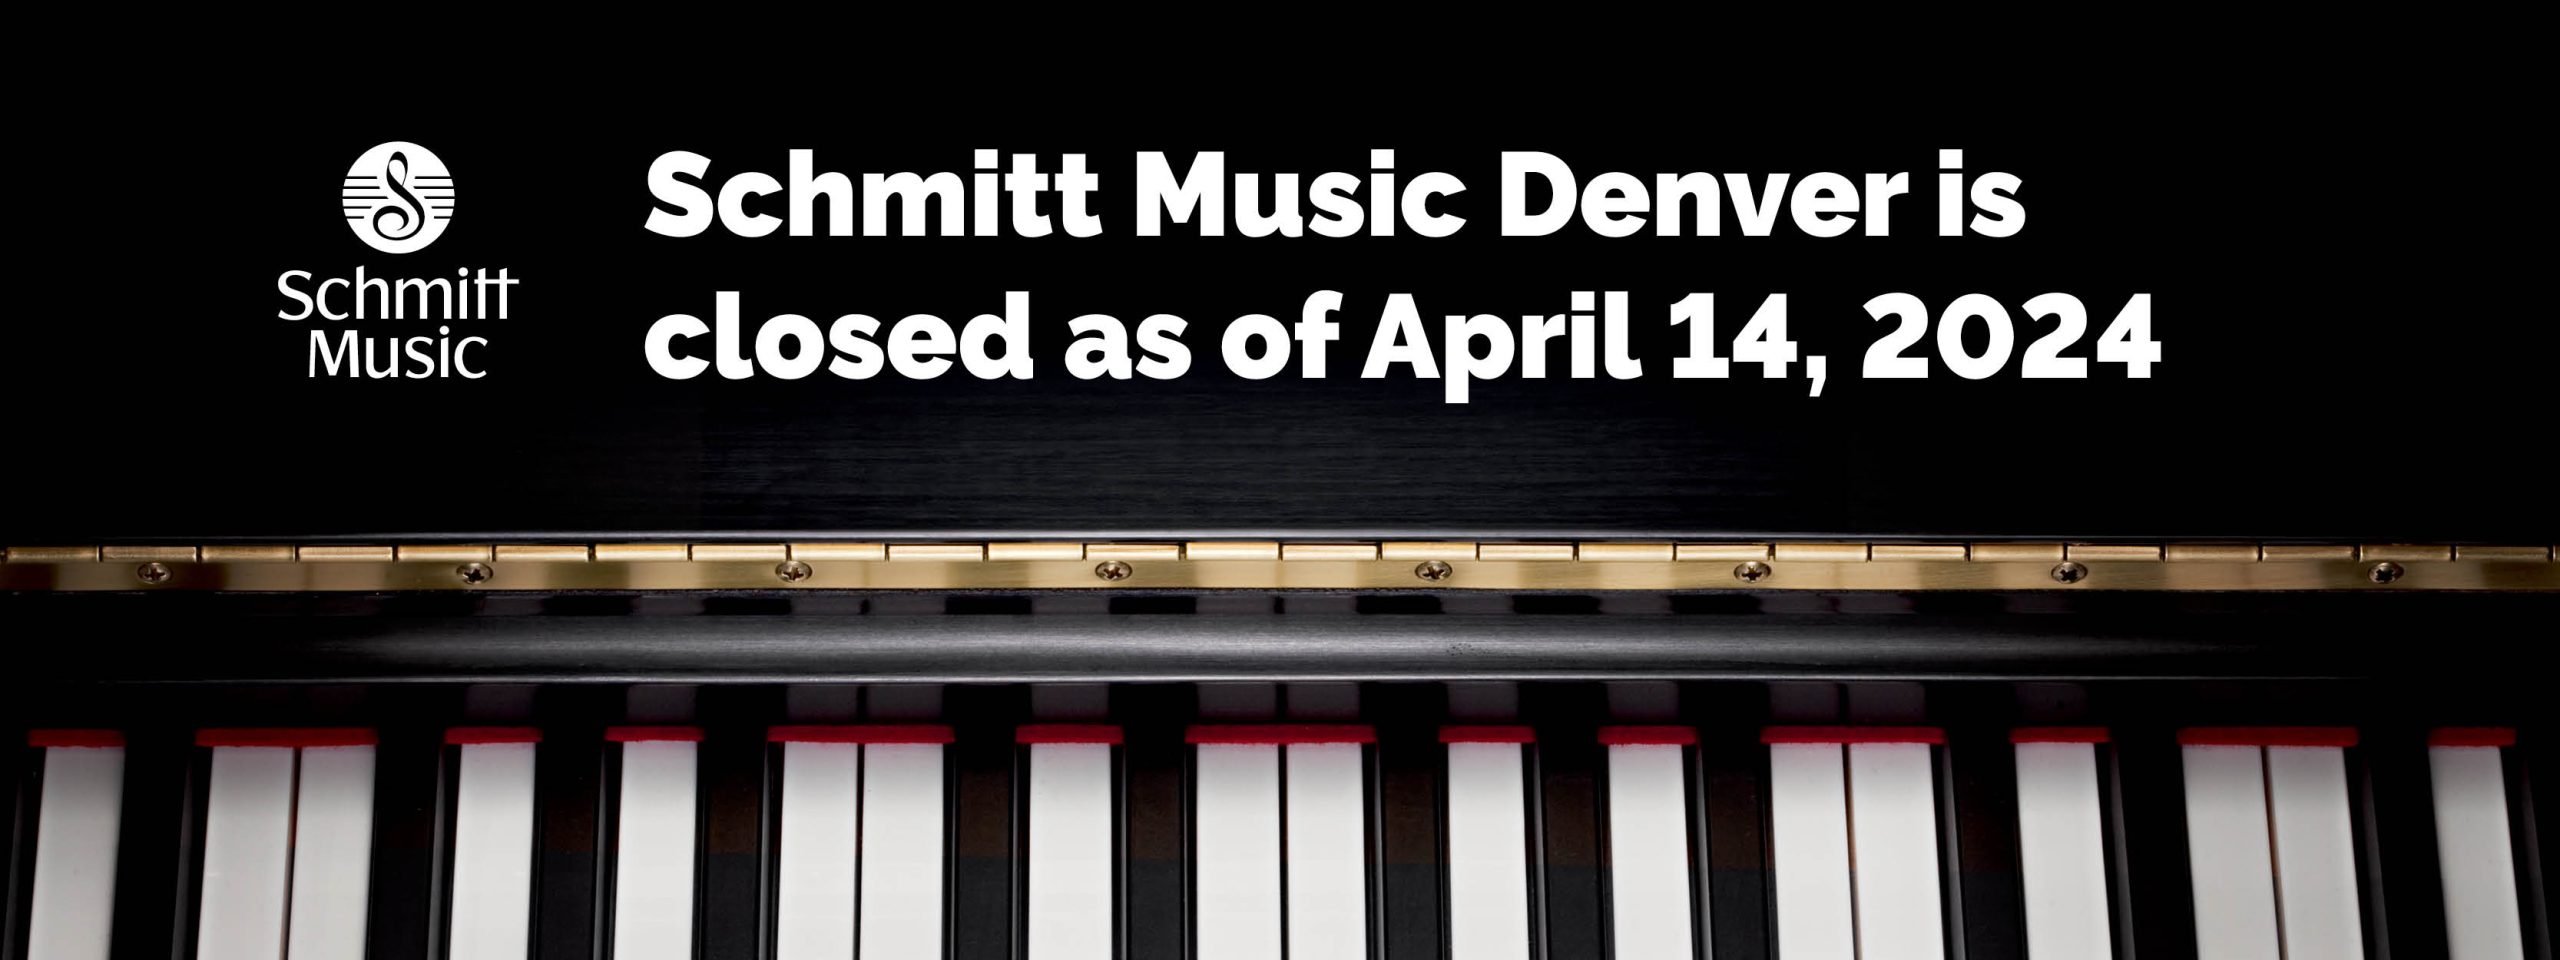 Schmitt Music Denver is closed as of April 14, 2024